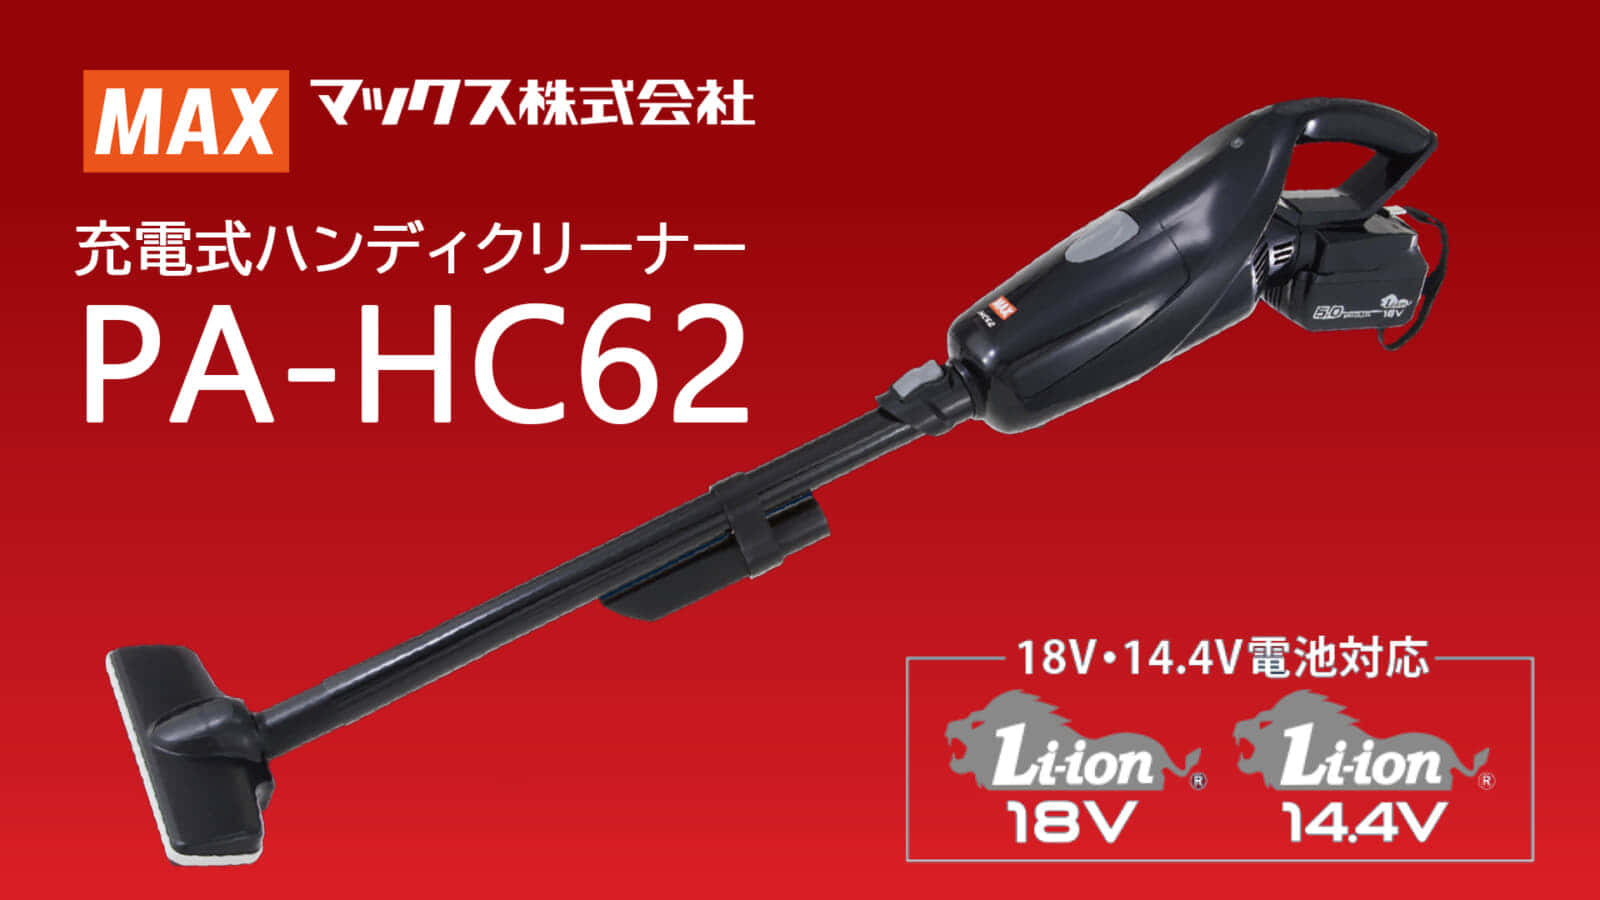 マックス PJ-HC62 充電式ハンディクリーナー発売、低騒音70dB